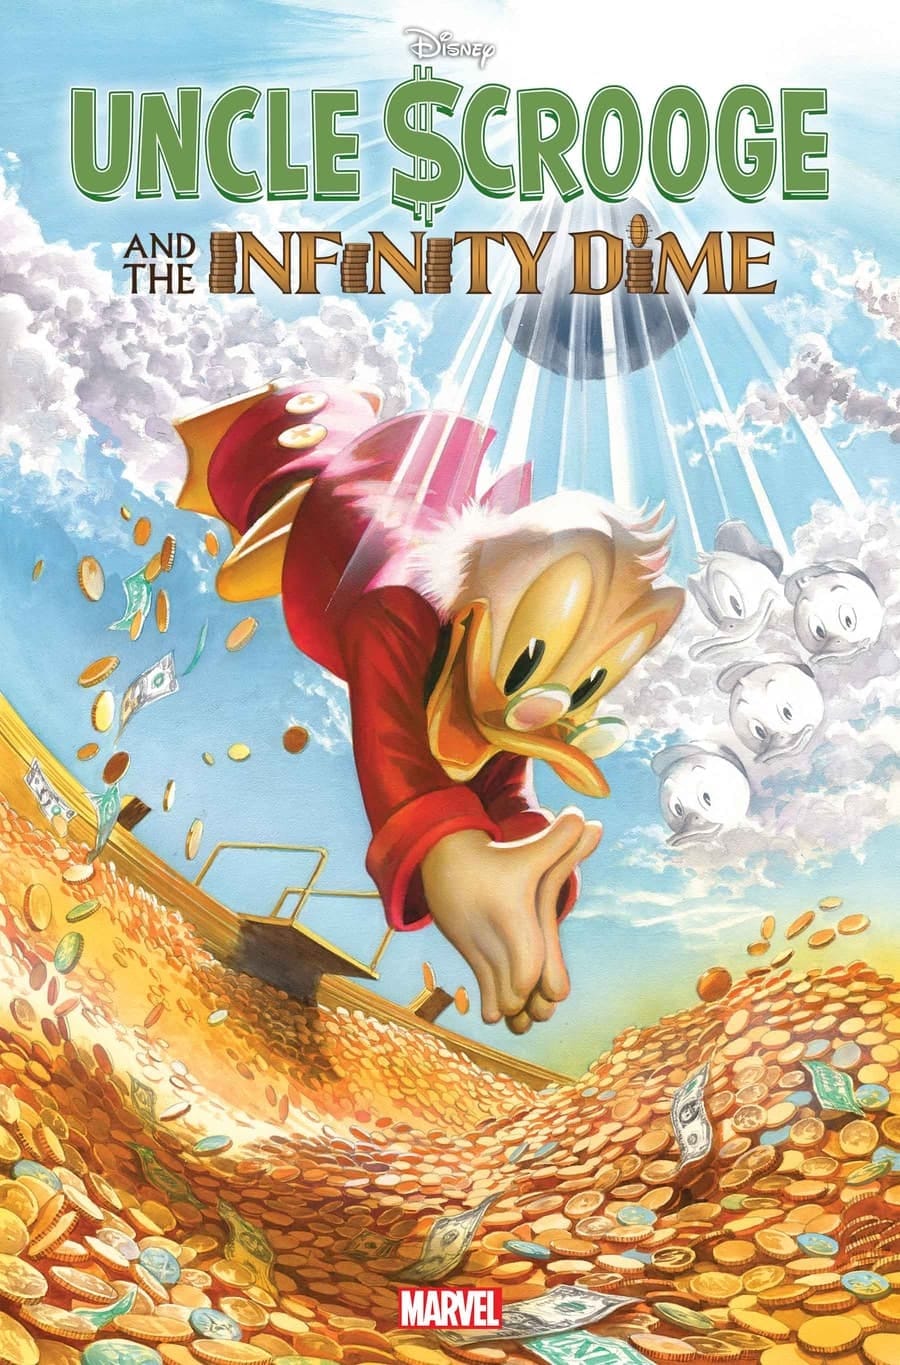 Tio-Patinhas-e-a-Moeda-Infinita-2 Marvel apresenta Tio Patinhas e a Moeda Infinita, uma aventura pelo Multiverso